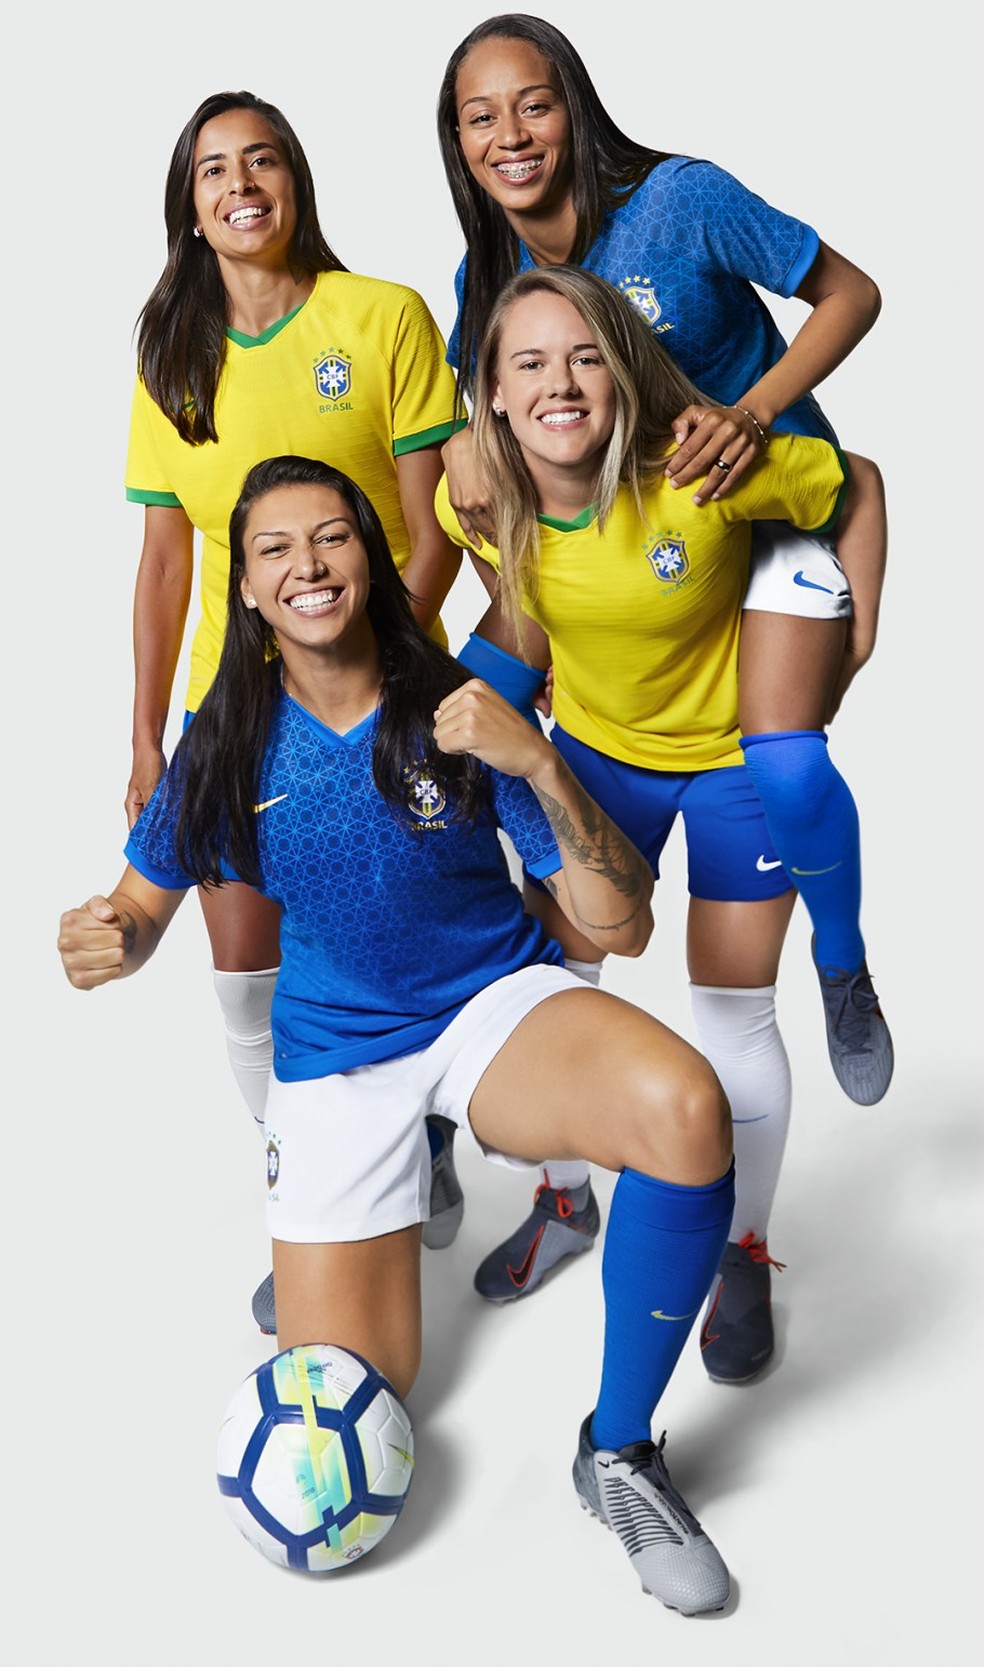 Veja o uniforme da seleção brasileira feminina para a Copa do Mundo, Esporte